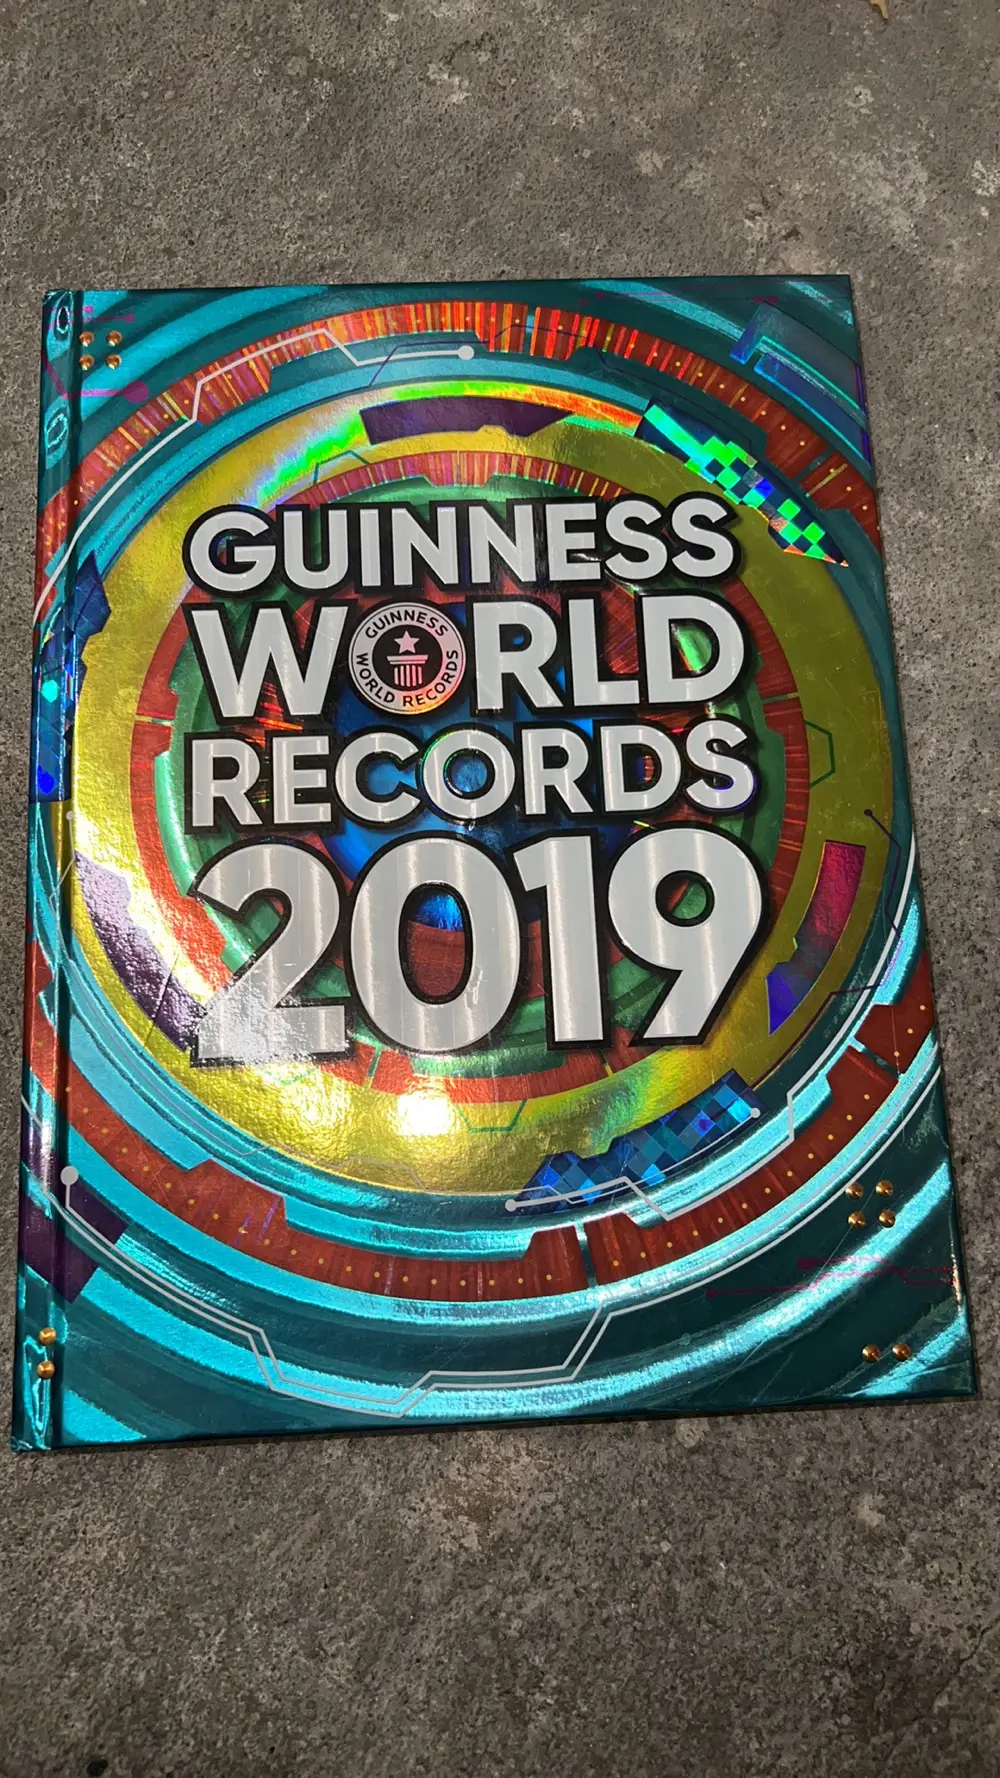 Guinness World rekords 2019 Bog